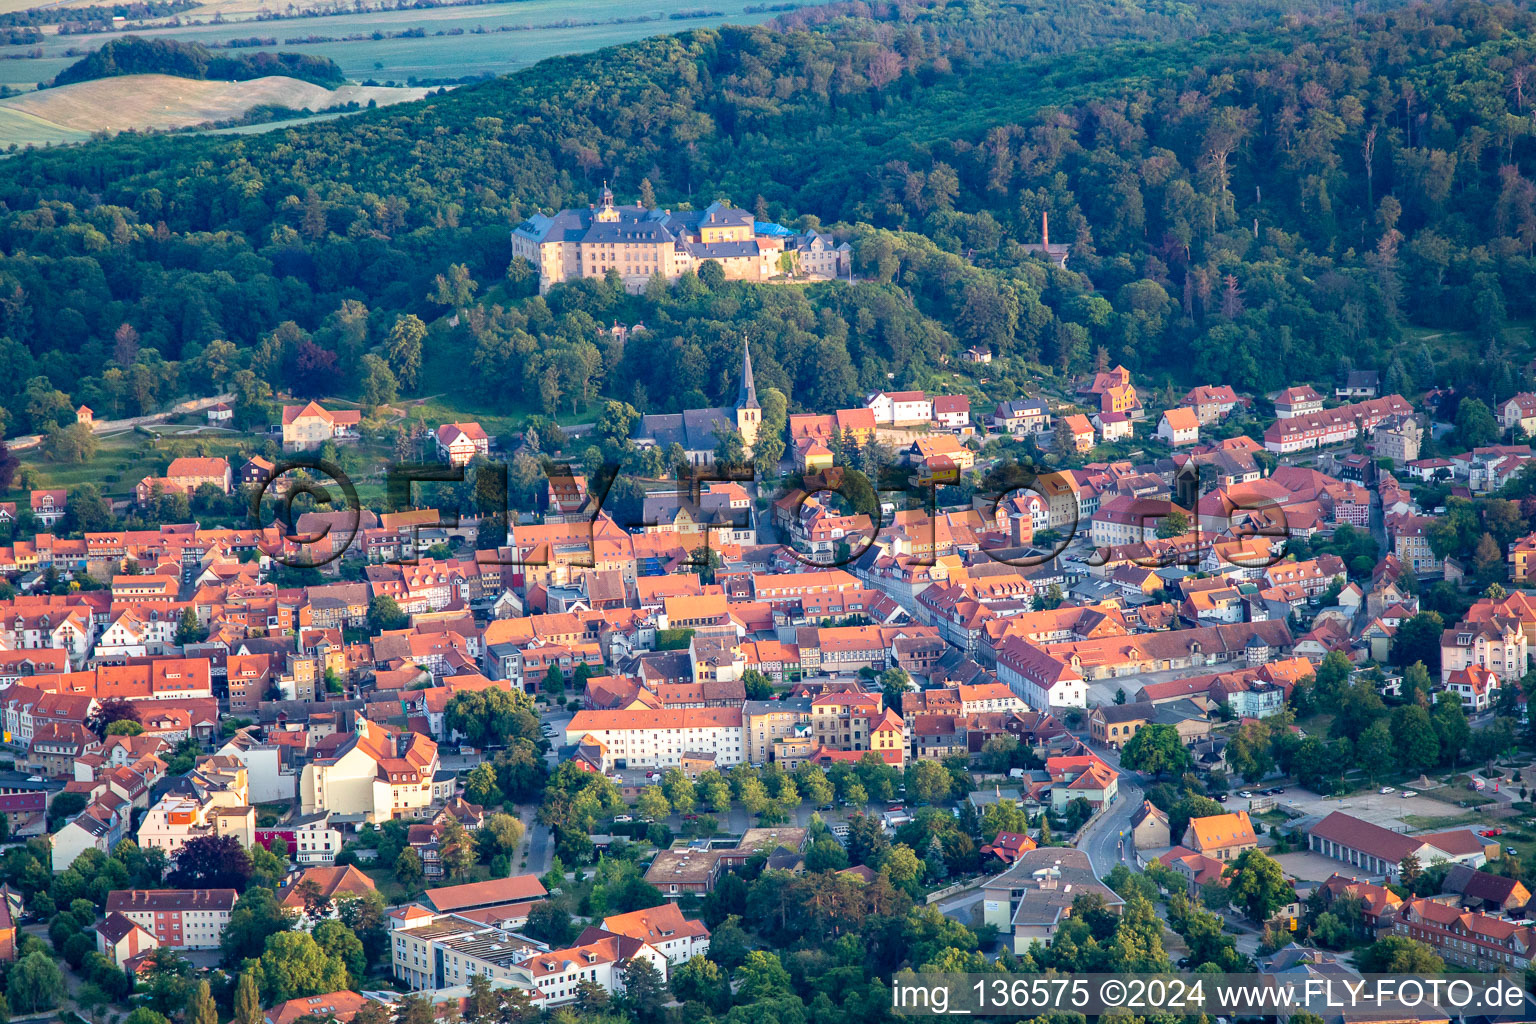 Luftbild von Schlosshotel Blankenburg im Bundesland Sachsen-Anhalt, Deutschland